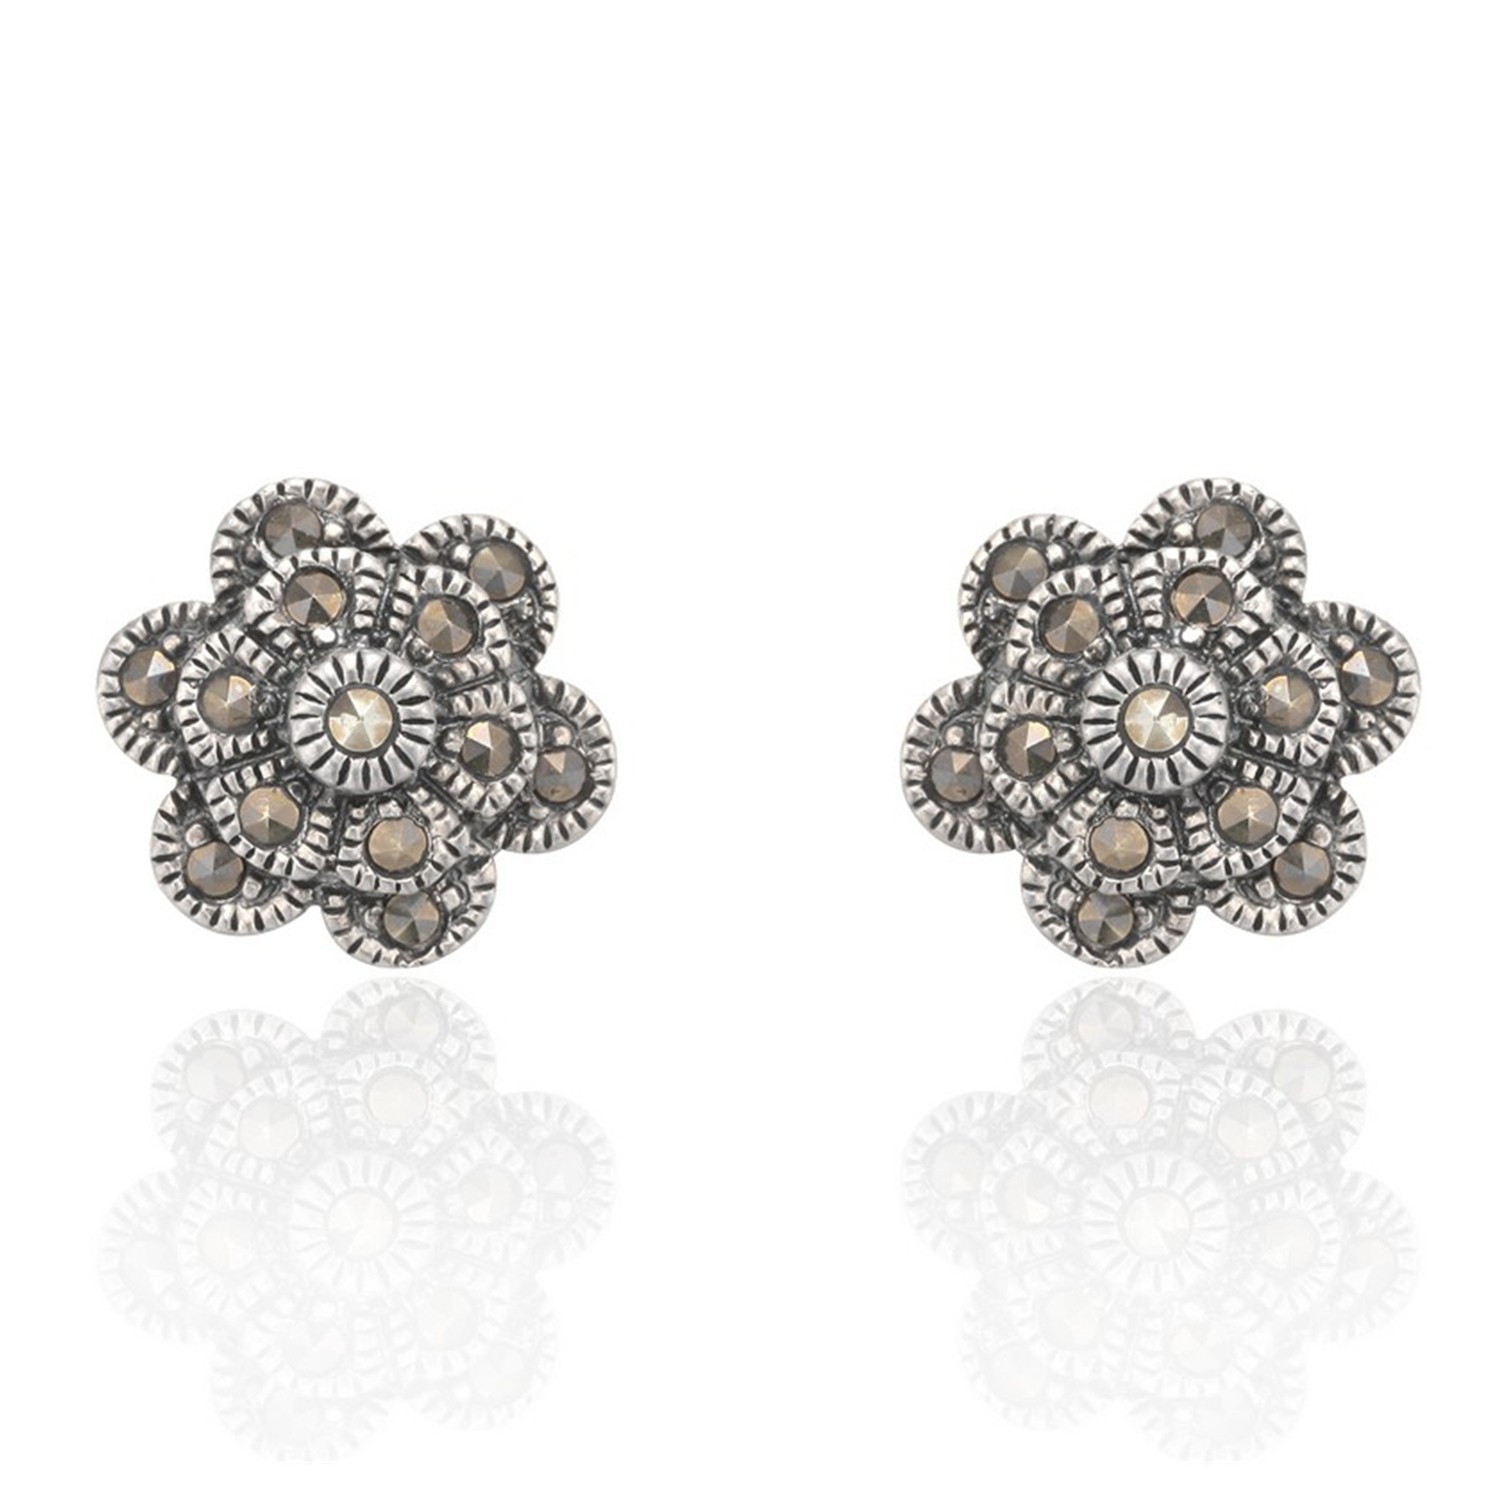 Marcasite high quality flower stud earrings 925 silver stud earrings female jewelry for women